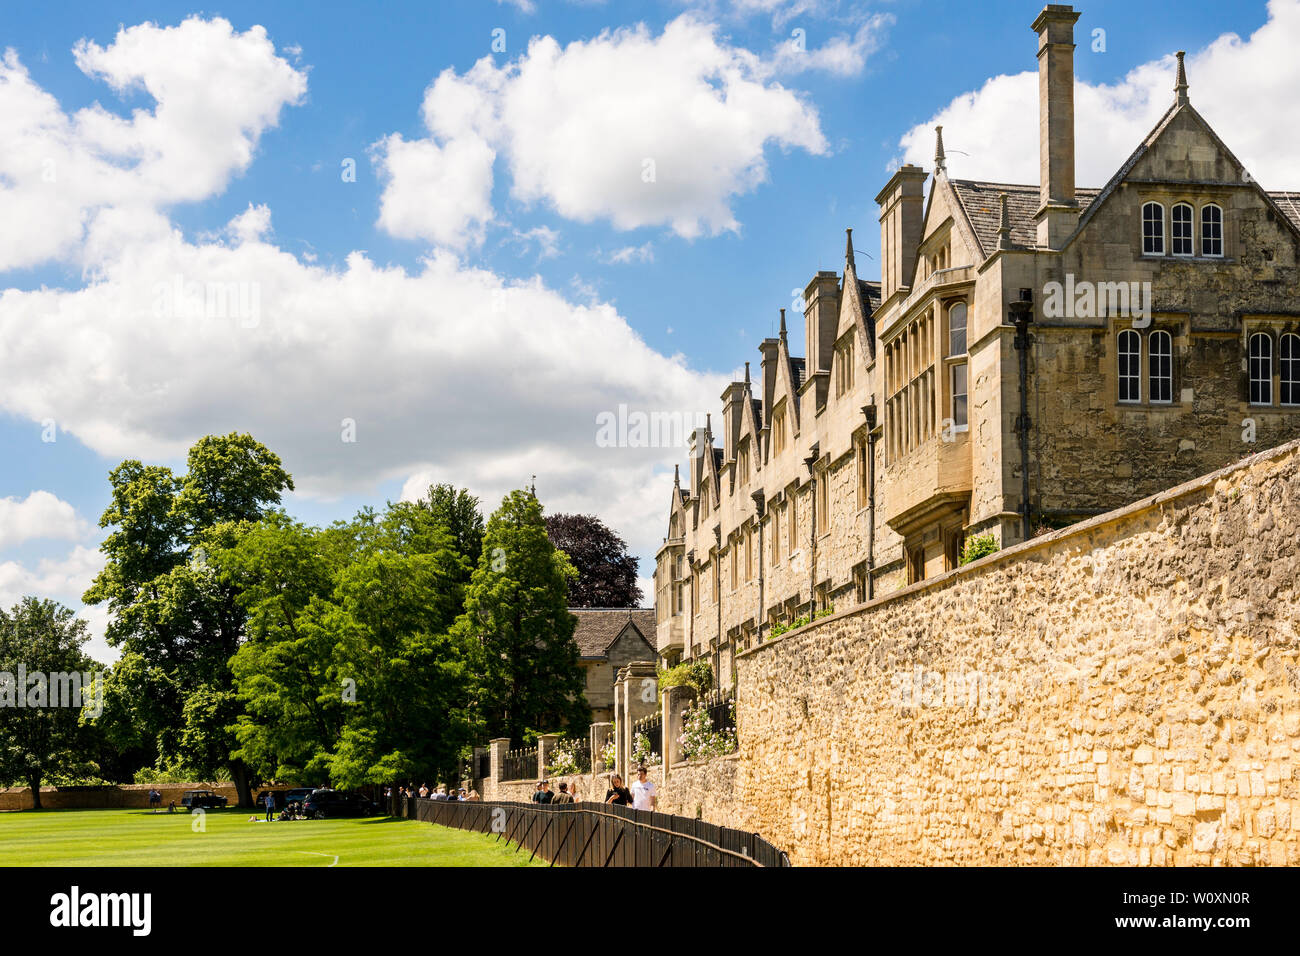 La parte posterior de Merton College brillantemente iluminada por el sol bajo un cielo azul con nubes blancas en un hermoso día de verano en la famosa ciudad universitaria de Oxford. Foto de stock